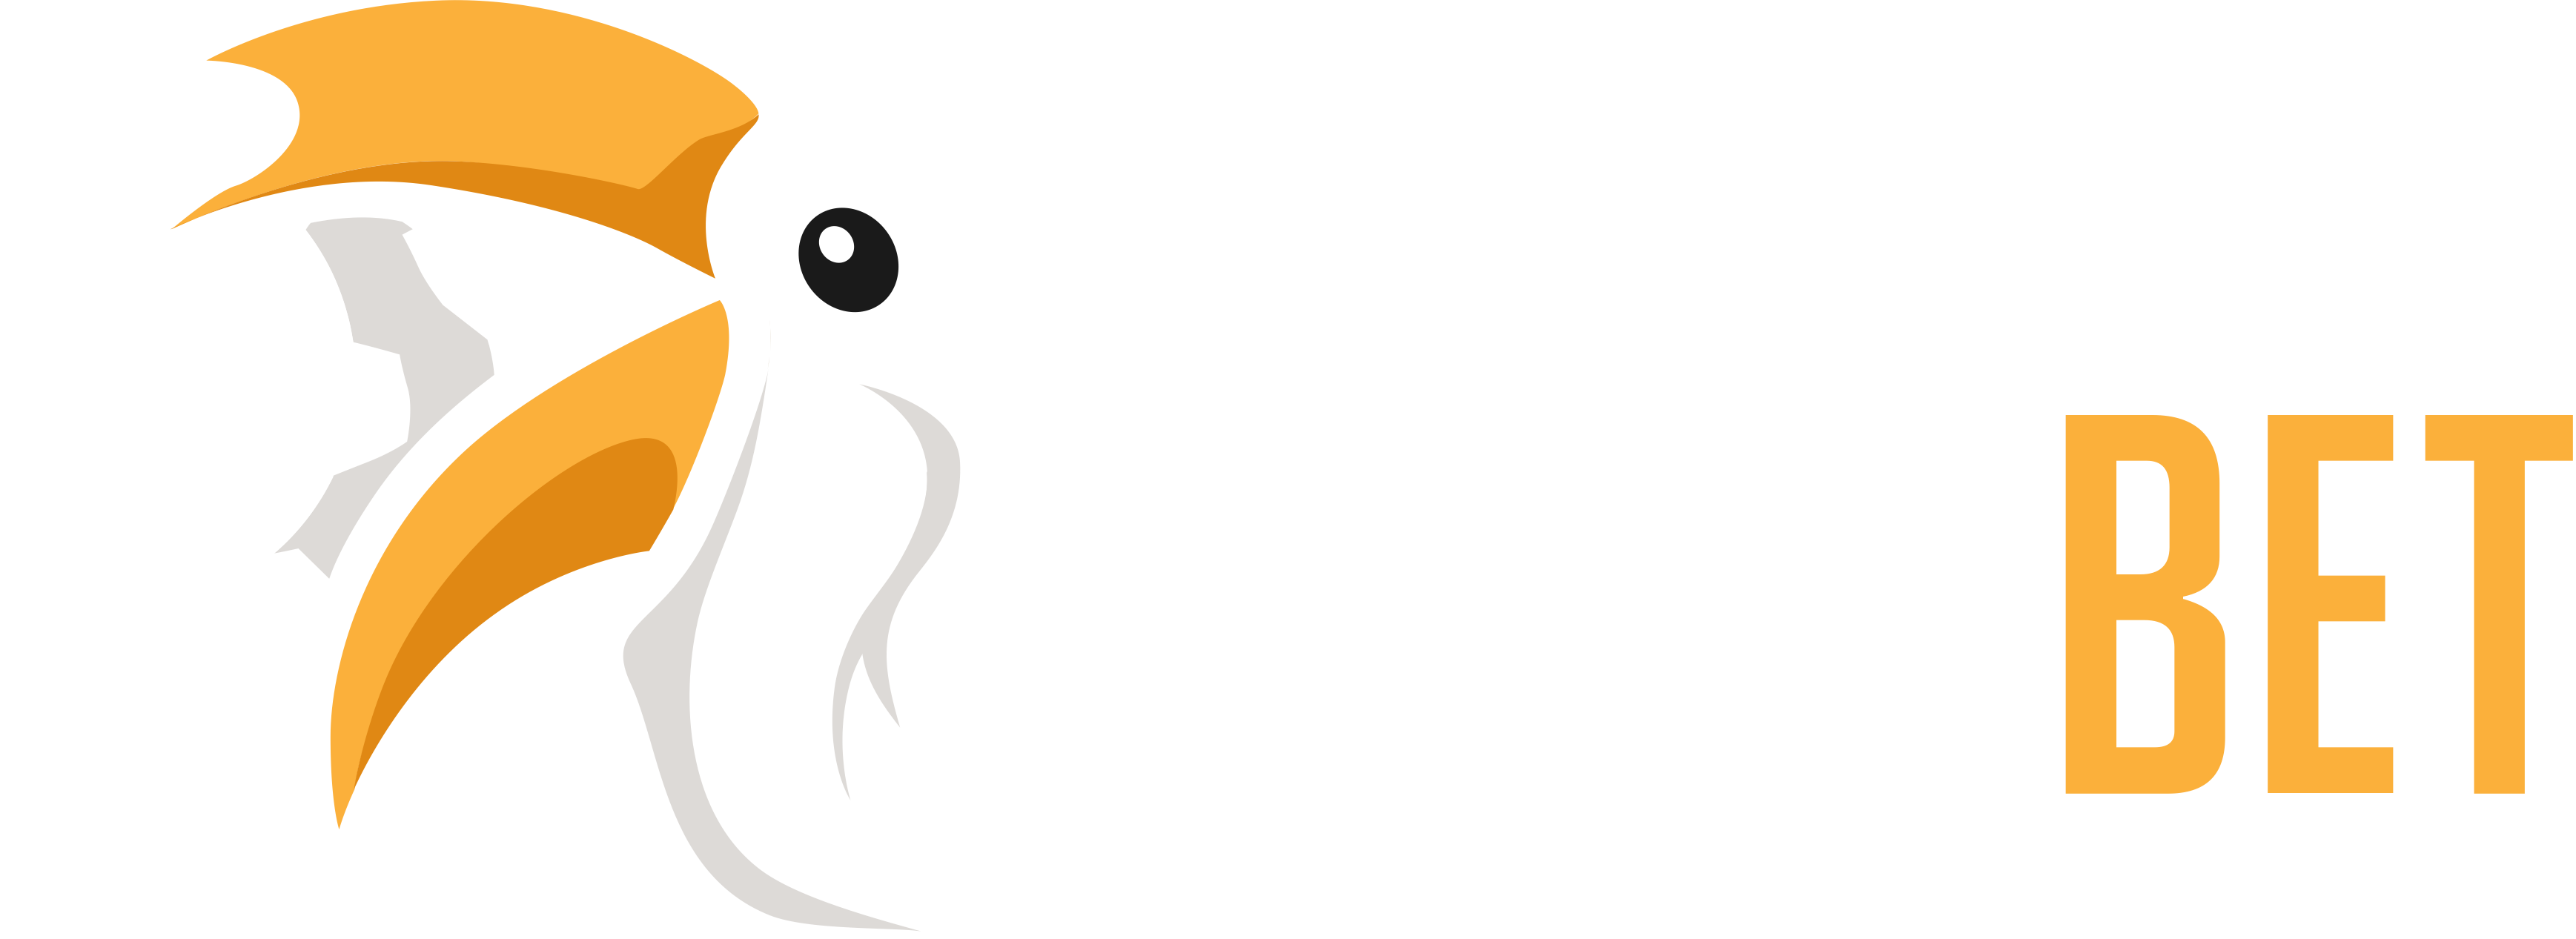 logo kasyna Biamobet